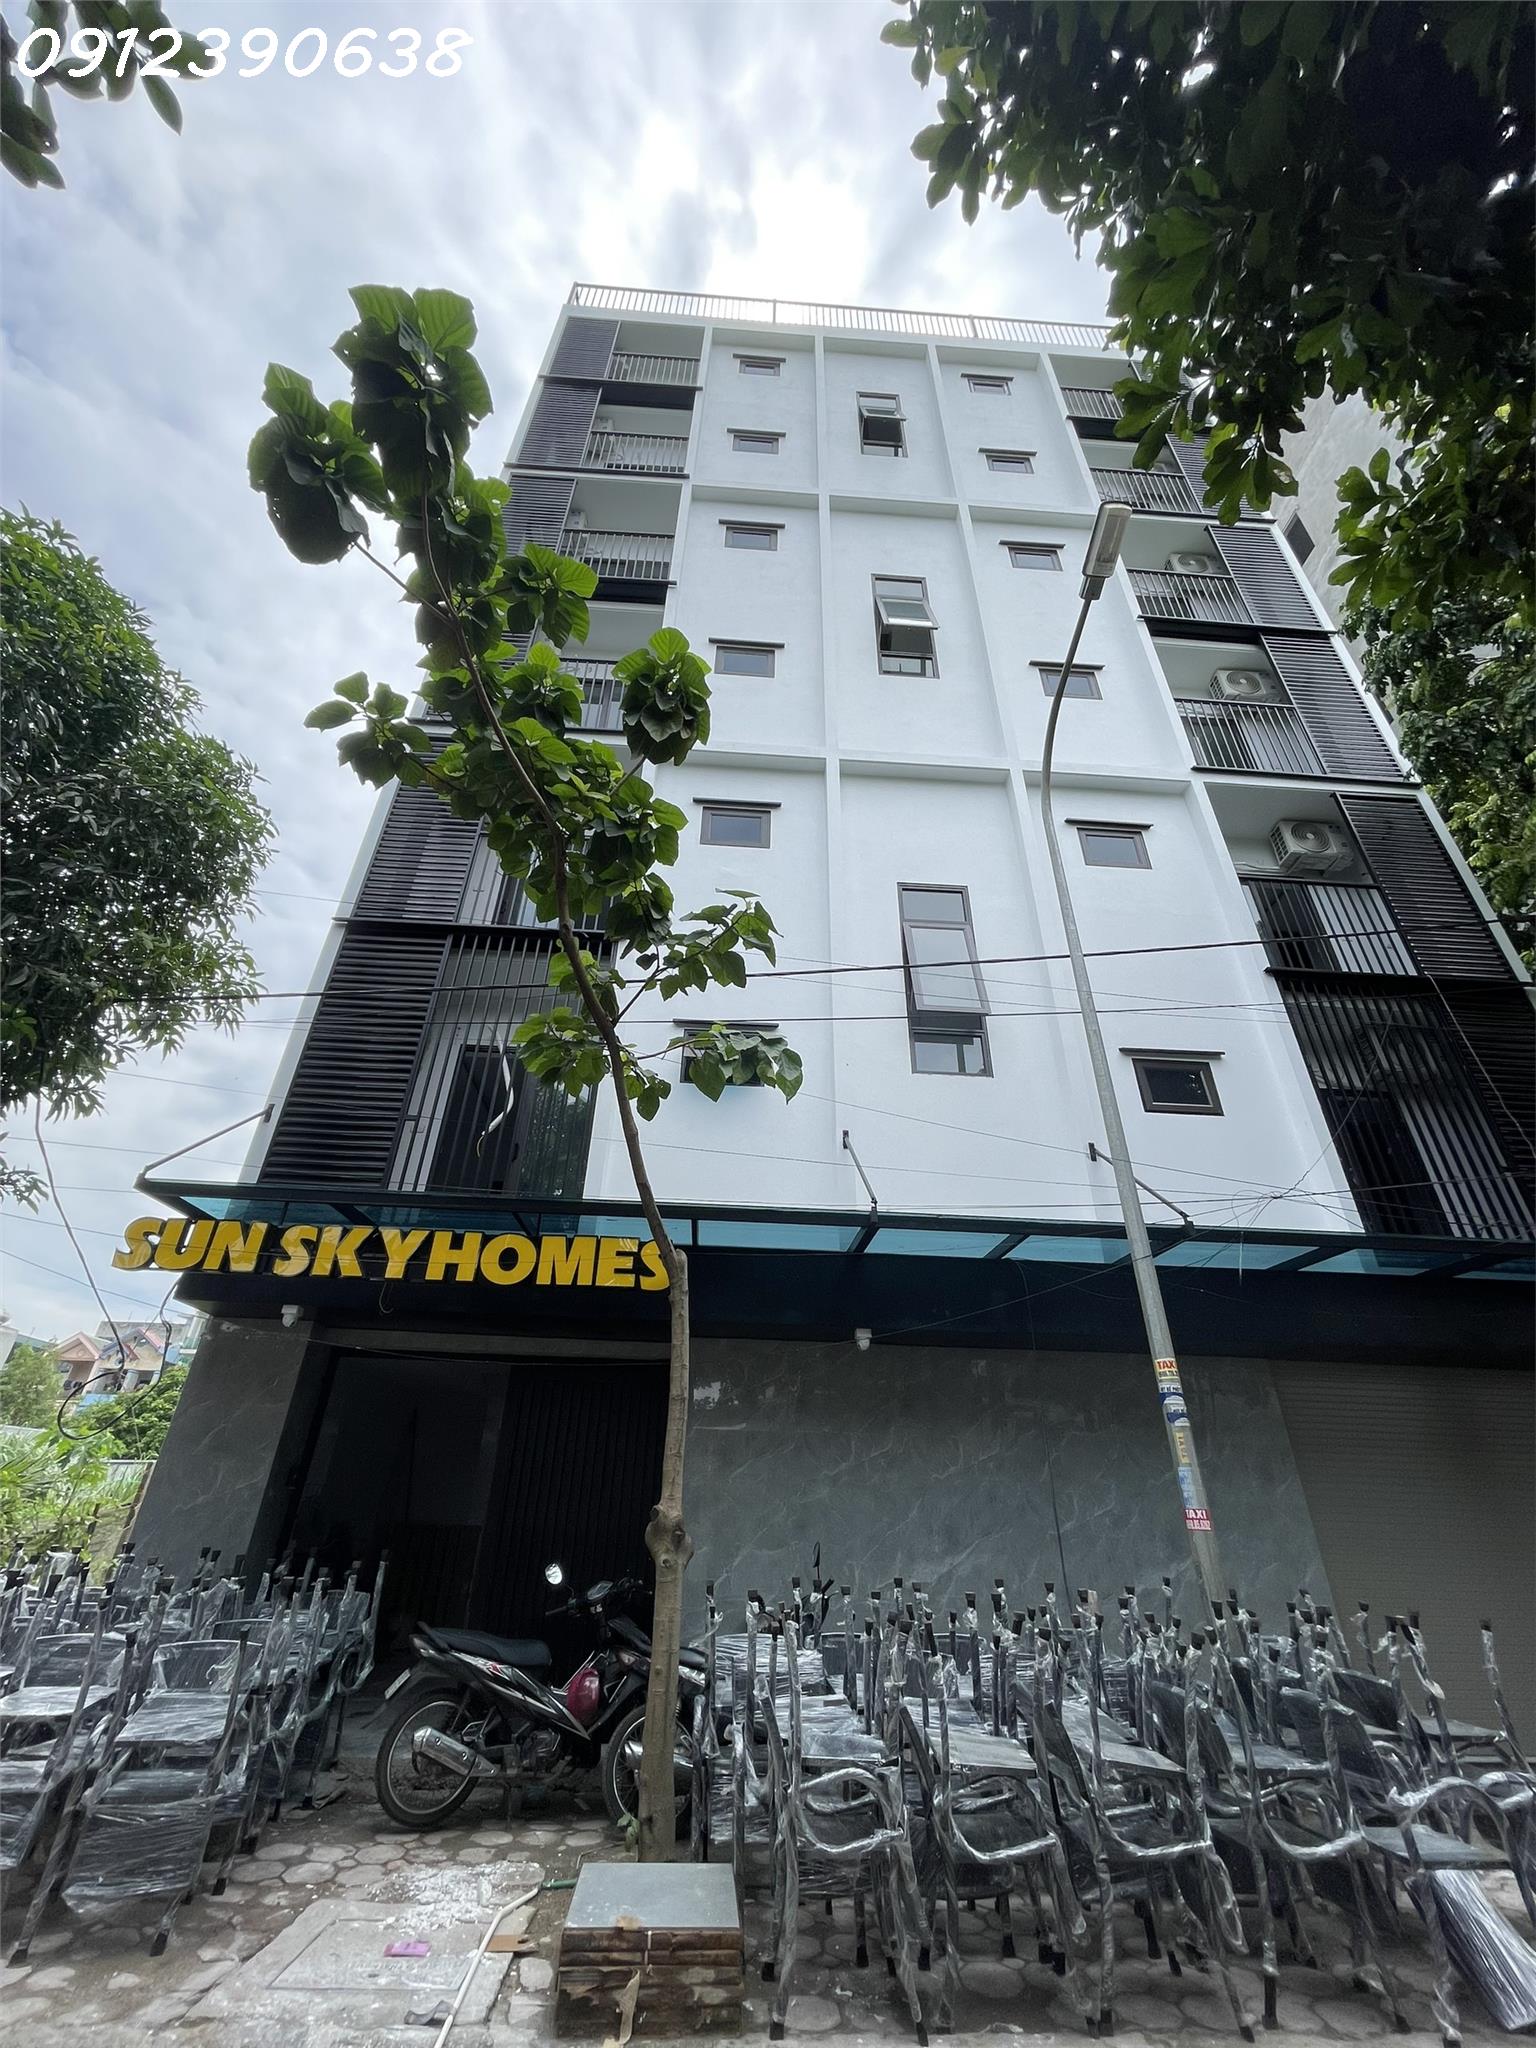 CHO THUÊ PHÒNG Chính chủ có hệ thống nhà trọ sinh viên Skyhomes Hòa Lạc FPT có phòng DT từ 26m tới 30m2 1